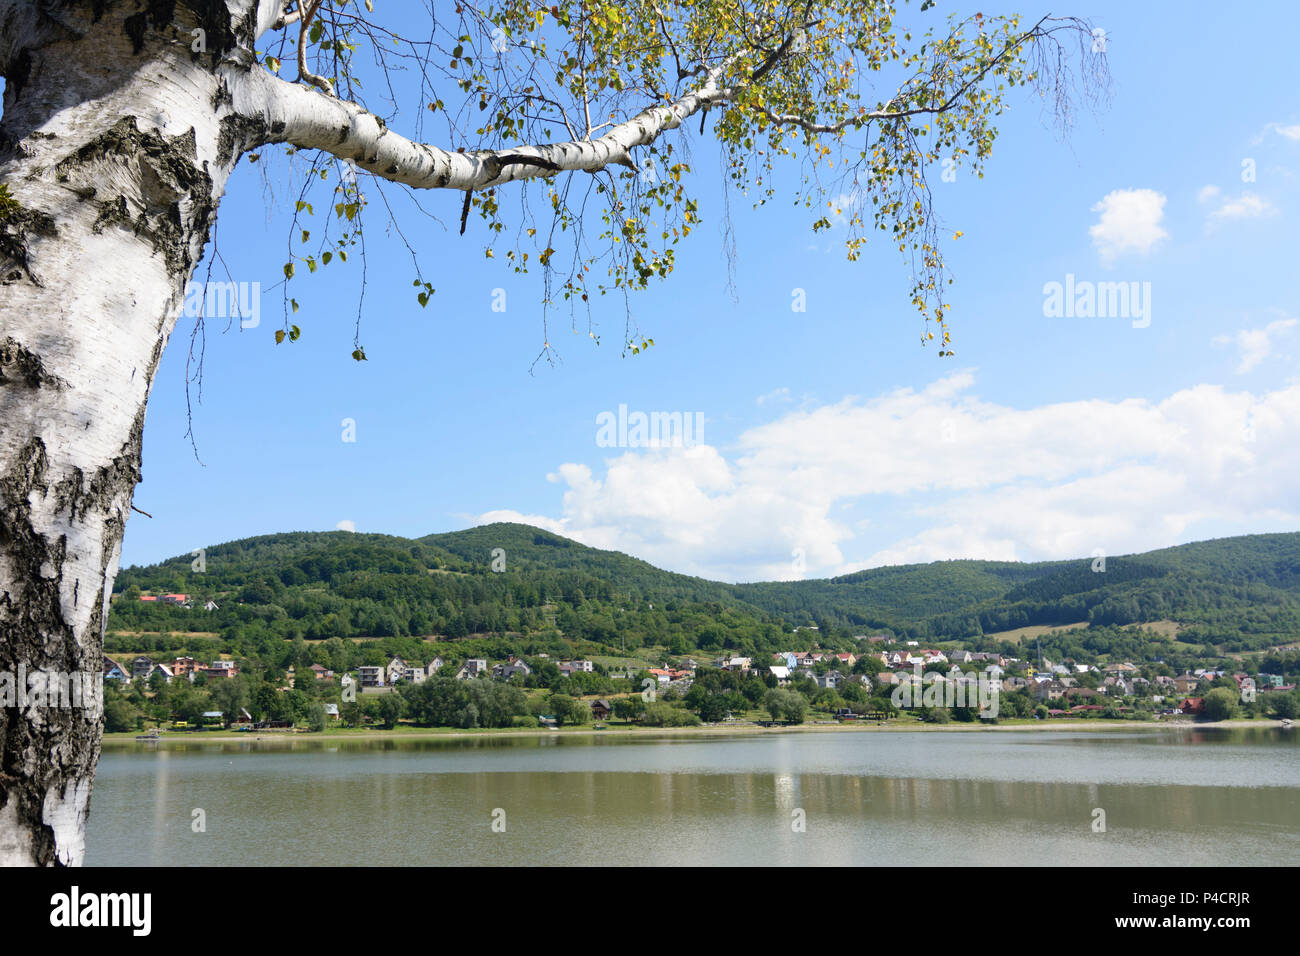 Nosice, Nosice serbatoio del fiume Vah, Slovacchia Foto Stock